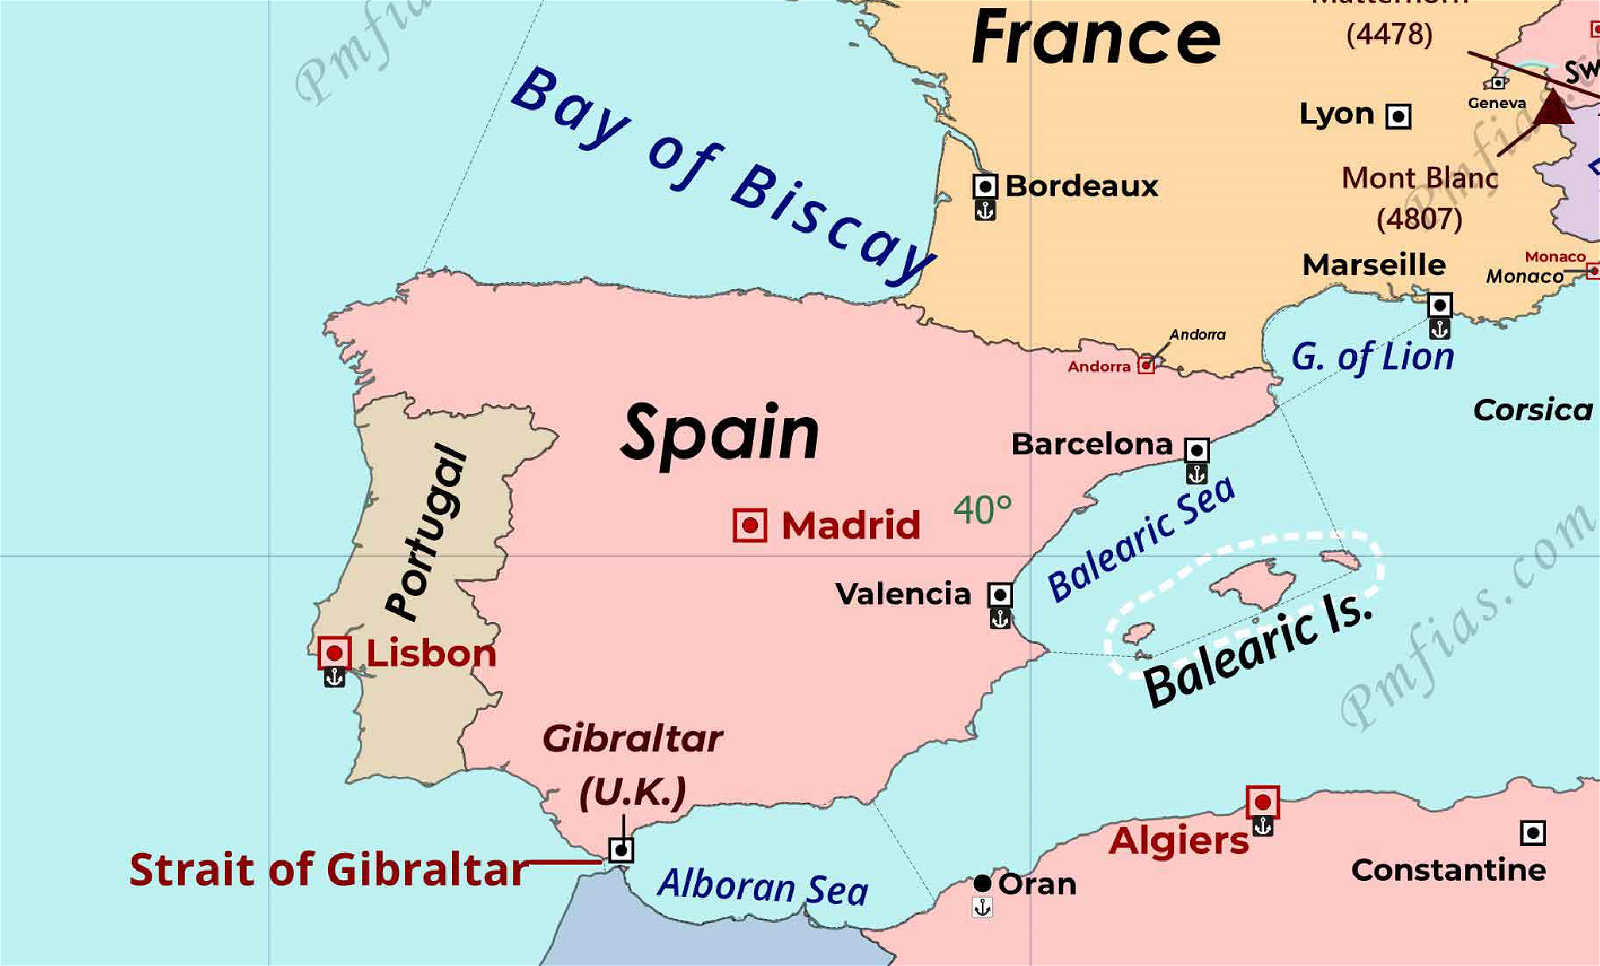 Balearic Islands & Balearic Sea